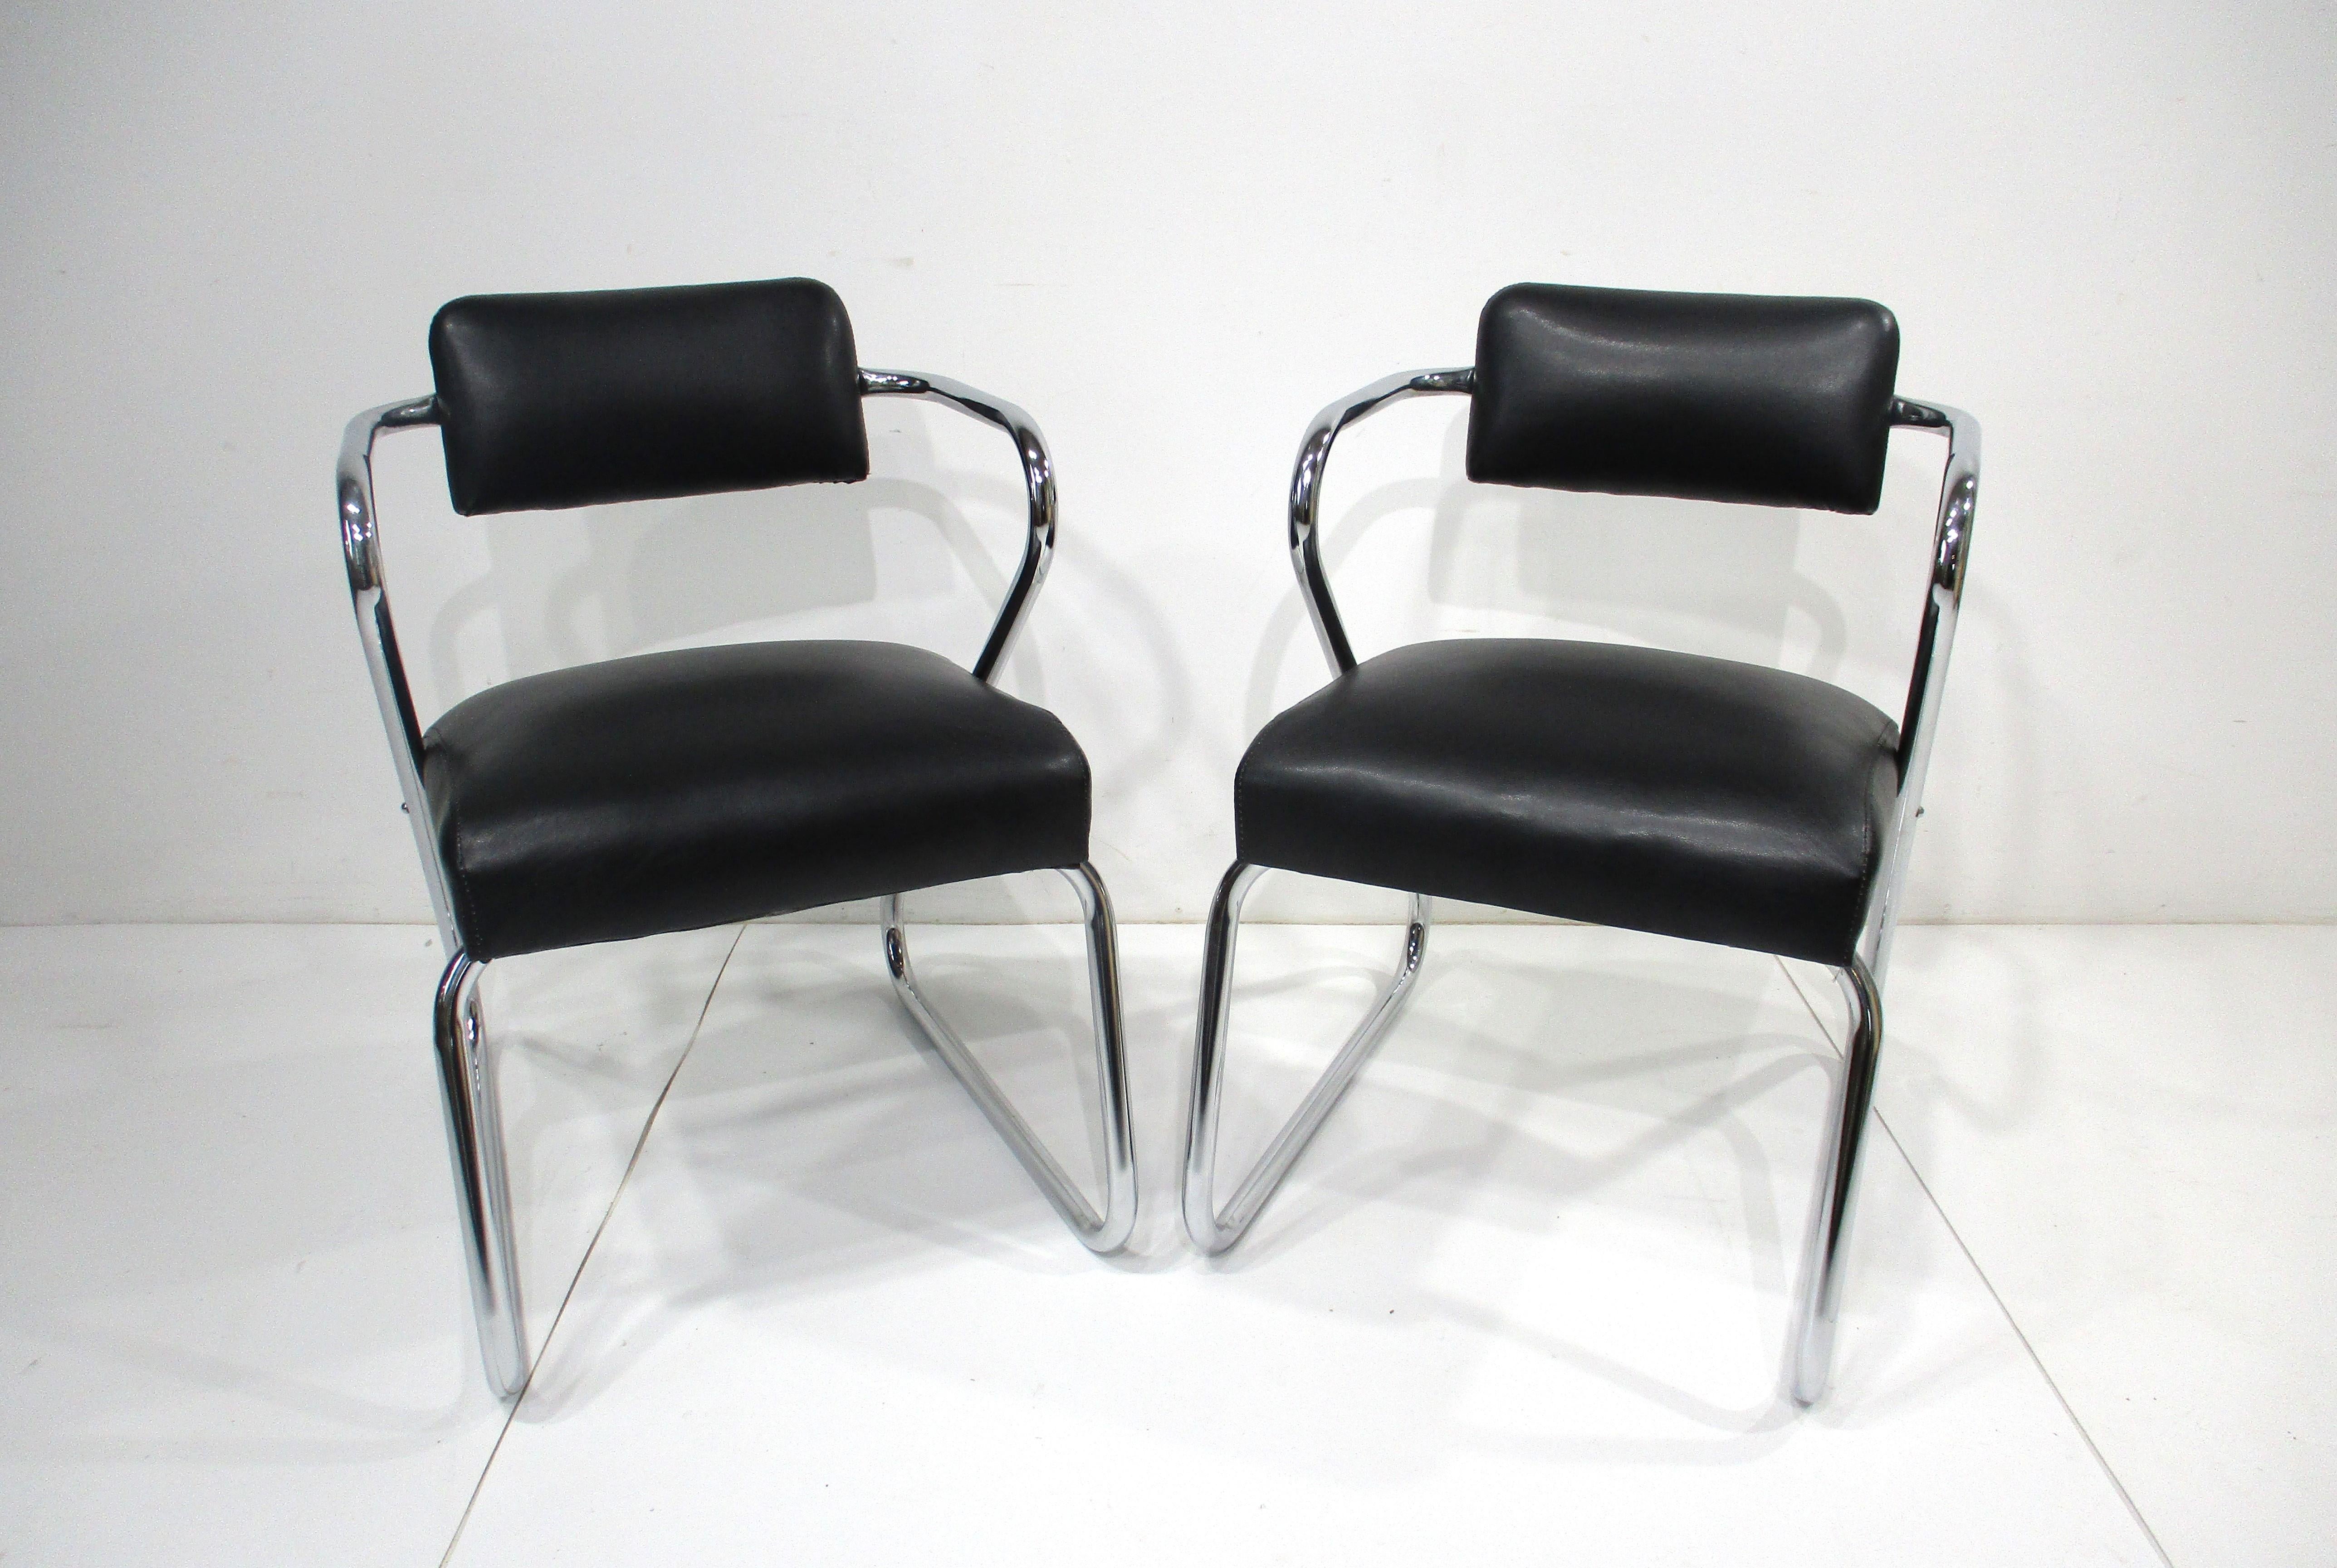 Ein Satz von zwei skulpturalen, verchromten Sitzstühlen in der Art der Z-Stühle von Gilbert Rohde. Gepolstert in einem satinschwarzen, weichen und glatten Kunstlederstoff, der sie für lange Zeit sehr bequem macht. Hergestellt von Royal Chrome und